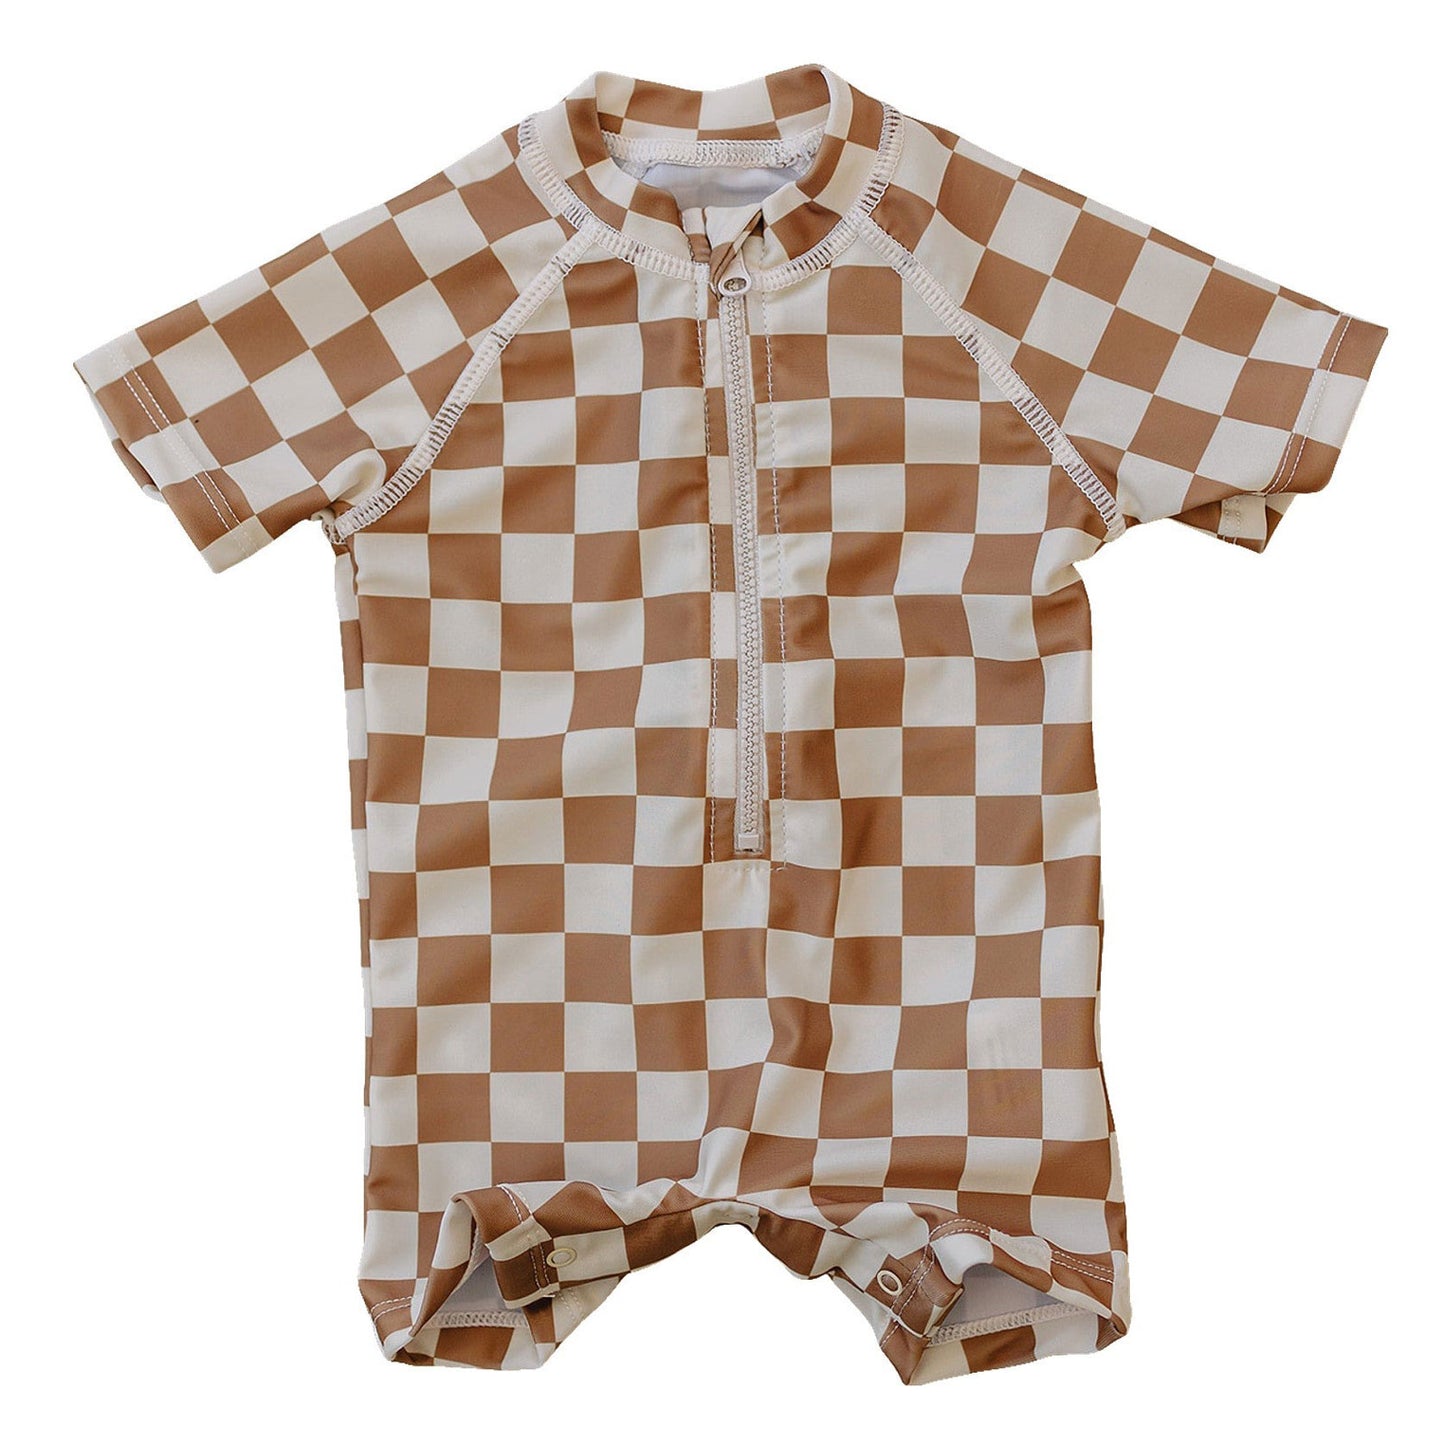 Mebie Baby Zipper Swim Suit - Rust Checkered